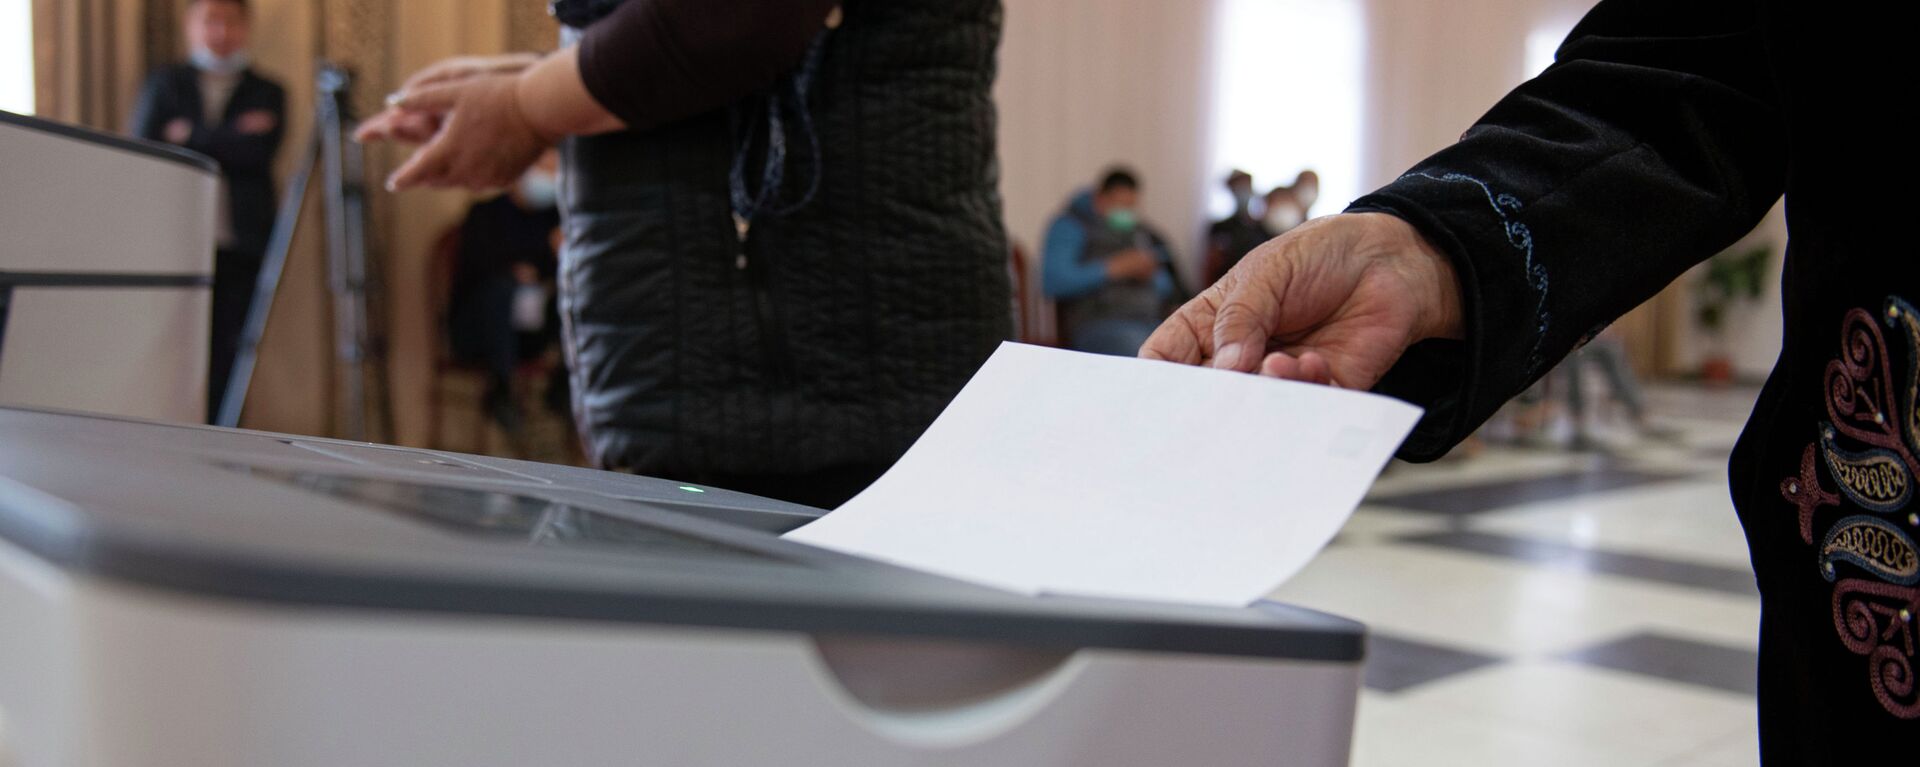 Люди голосуют на избирательном участке в Бишкеке. Архивное фото - Sputnik Кыргызстан, 1920, 01.09.2021